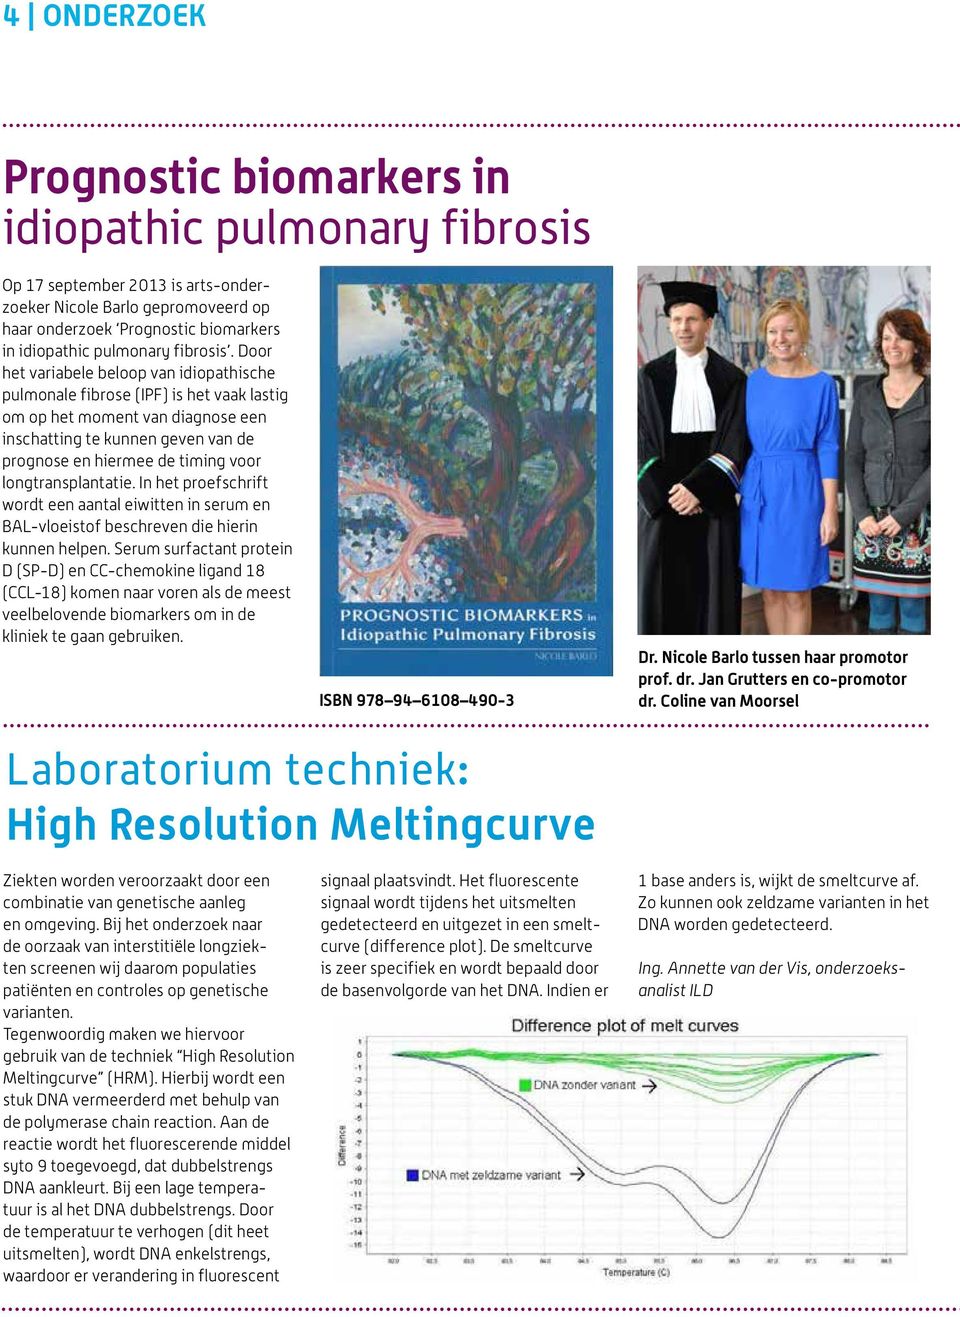 Door het variabele beloop van idiopathische pulmonale fibrose (IPF) is het vaak lastig om op het moment van diagnose een inschatting te kunnen geven van de prognose en hiermee de timing voor